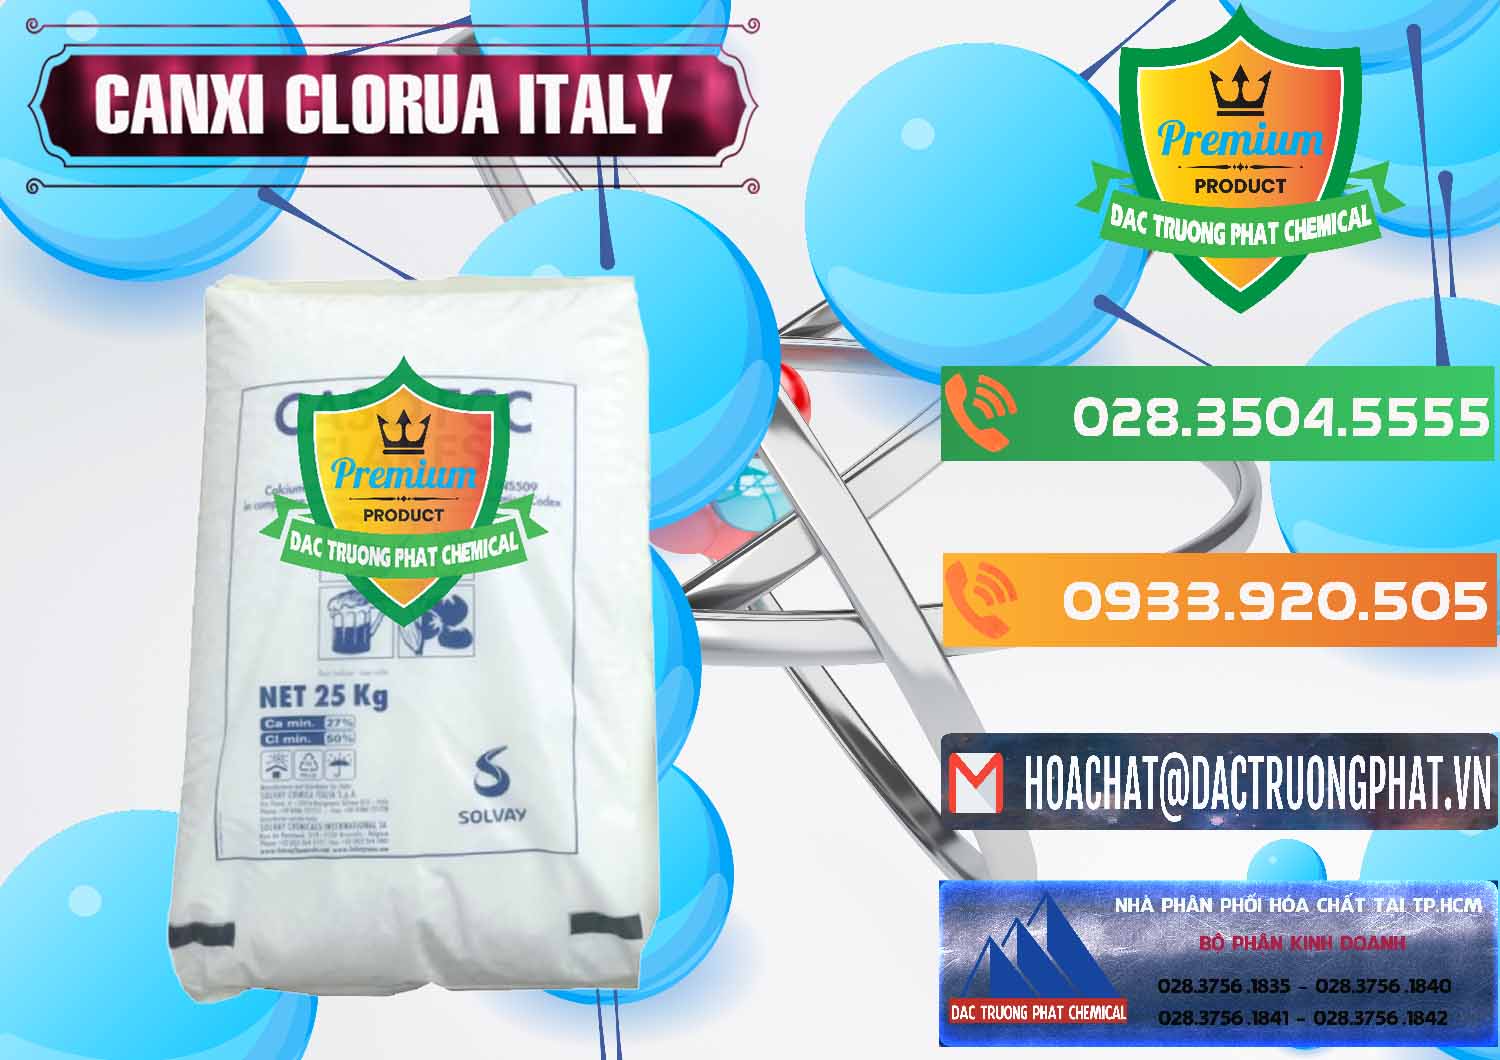 Chuyên cung cấp và bán CaCl2 – Canxi Clorua Food Grade Ý Italy - 0435 - Chuyên bán & phân phối hóa chất tại TP.HCM - hoachatxulynuoc.com.vn